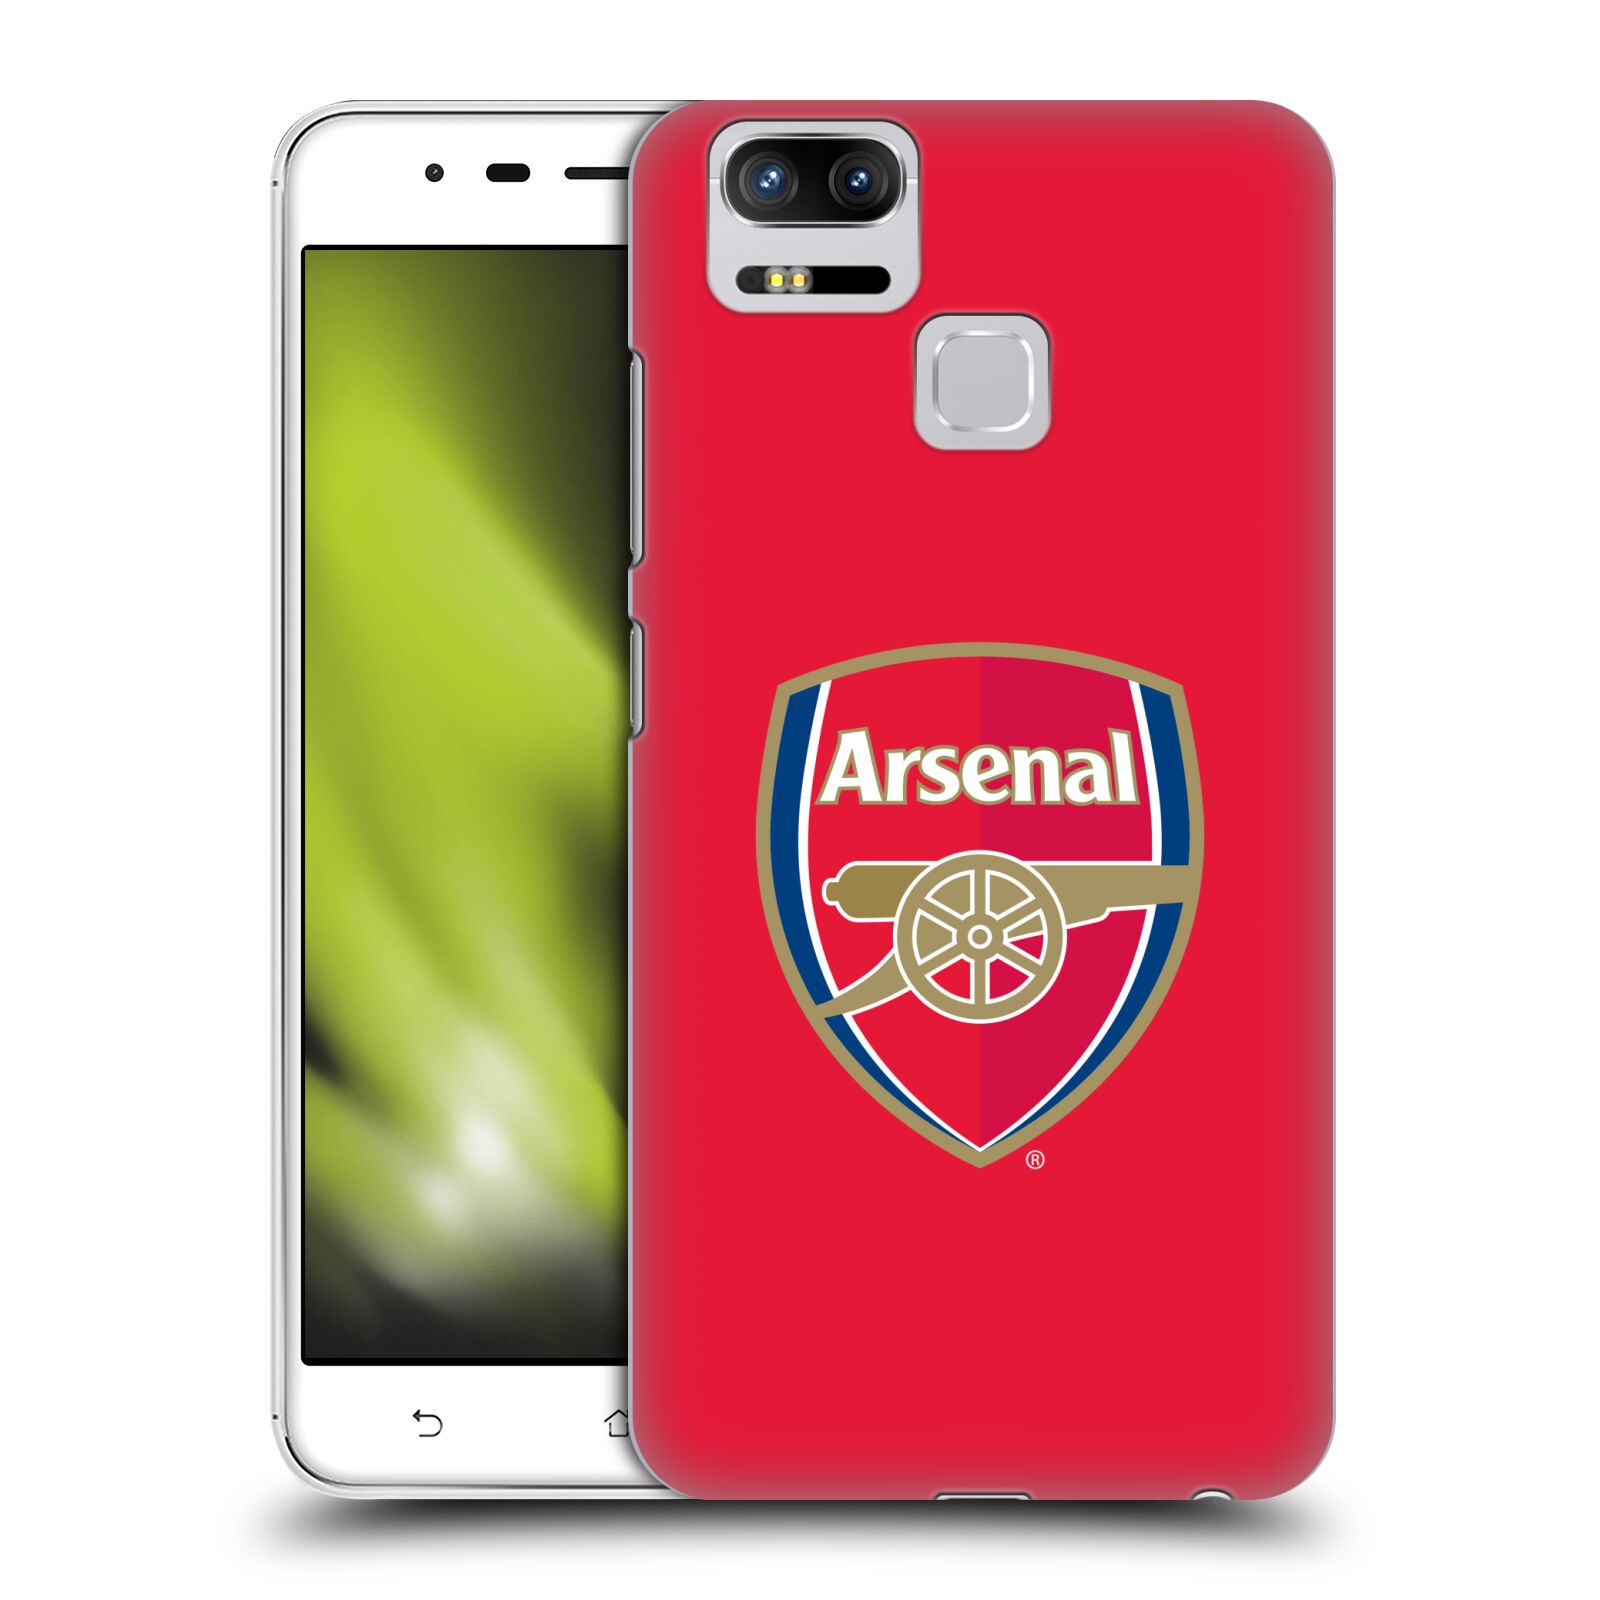 HEAD CASE plastový obal na mobil Asus Zenfone 3 Zoom ZE553KL Fotbalový klub Arsenal znak barevný červené pozadí